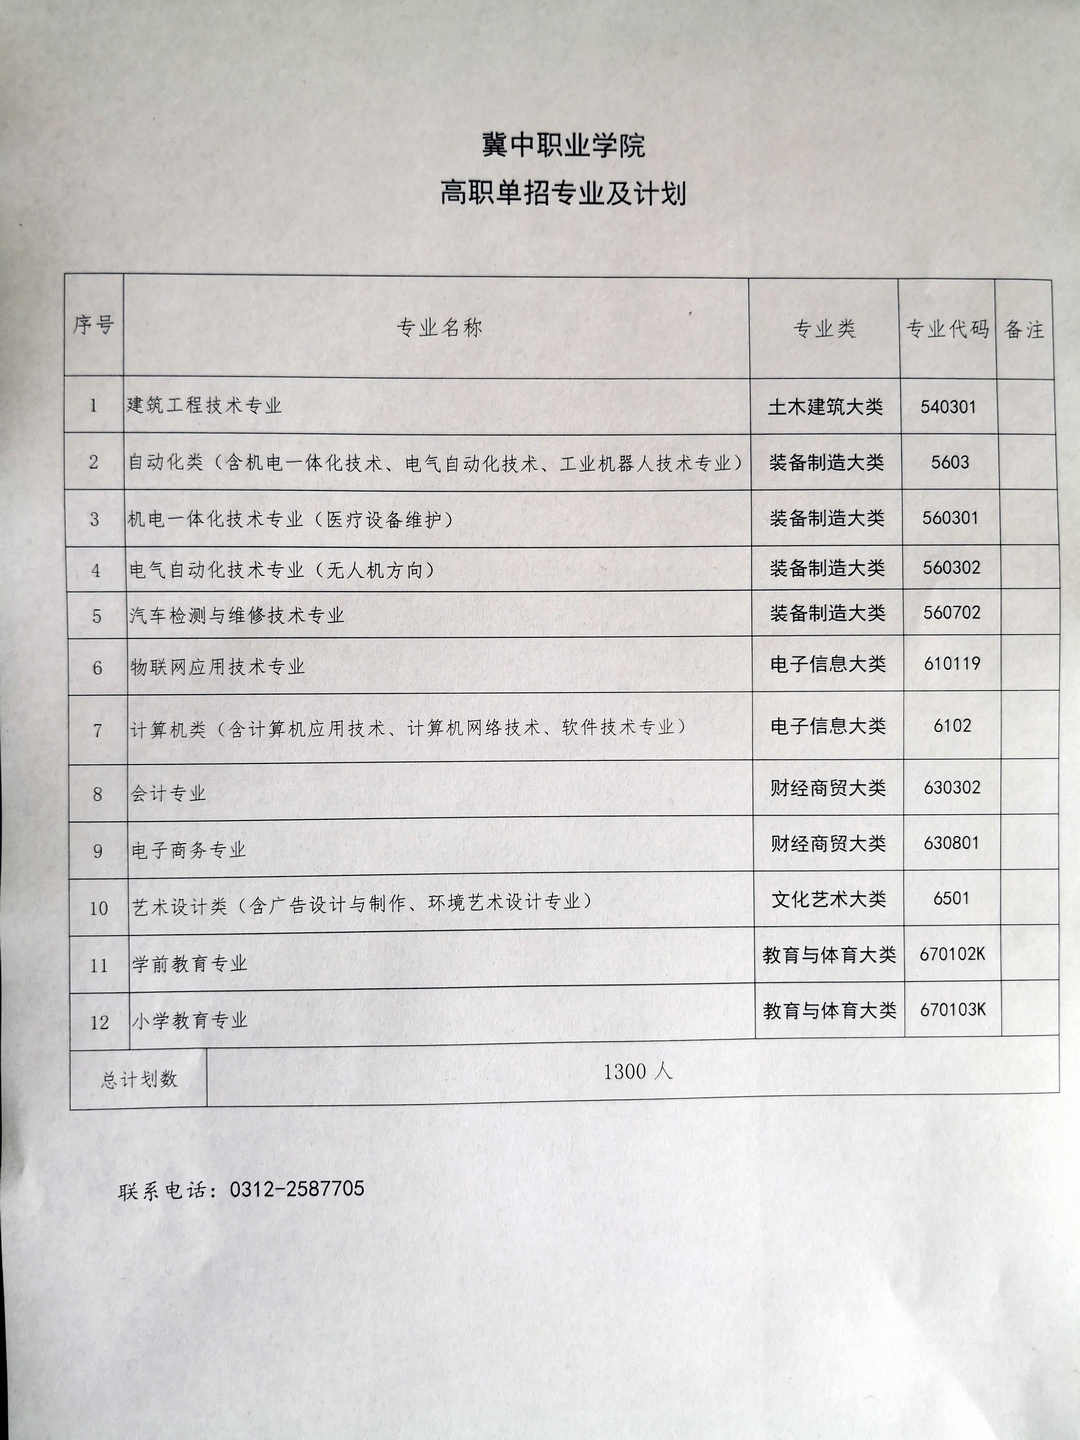 冀中职业学院2019年单招招生简章 图3